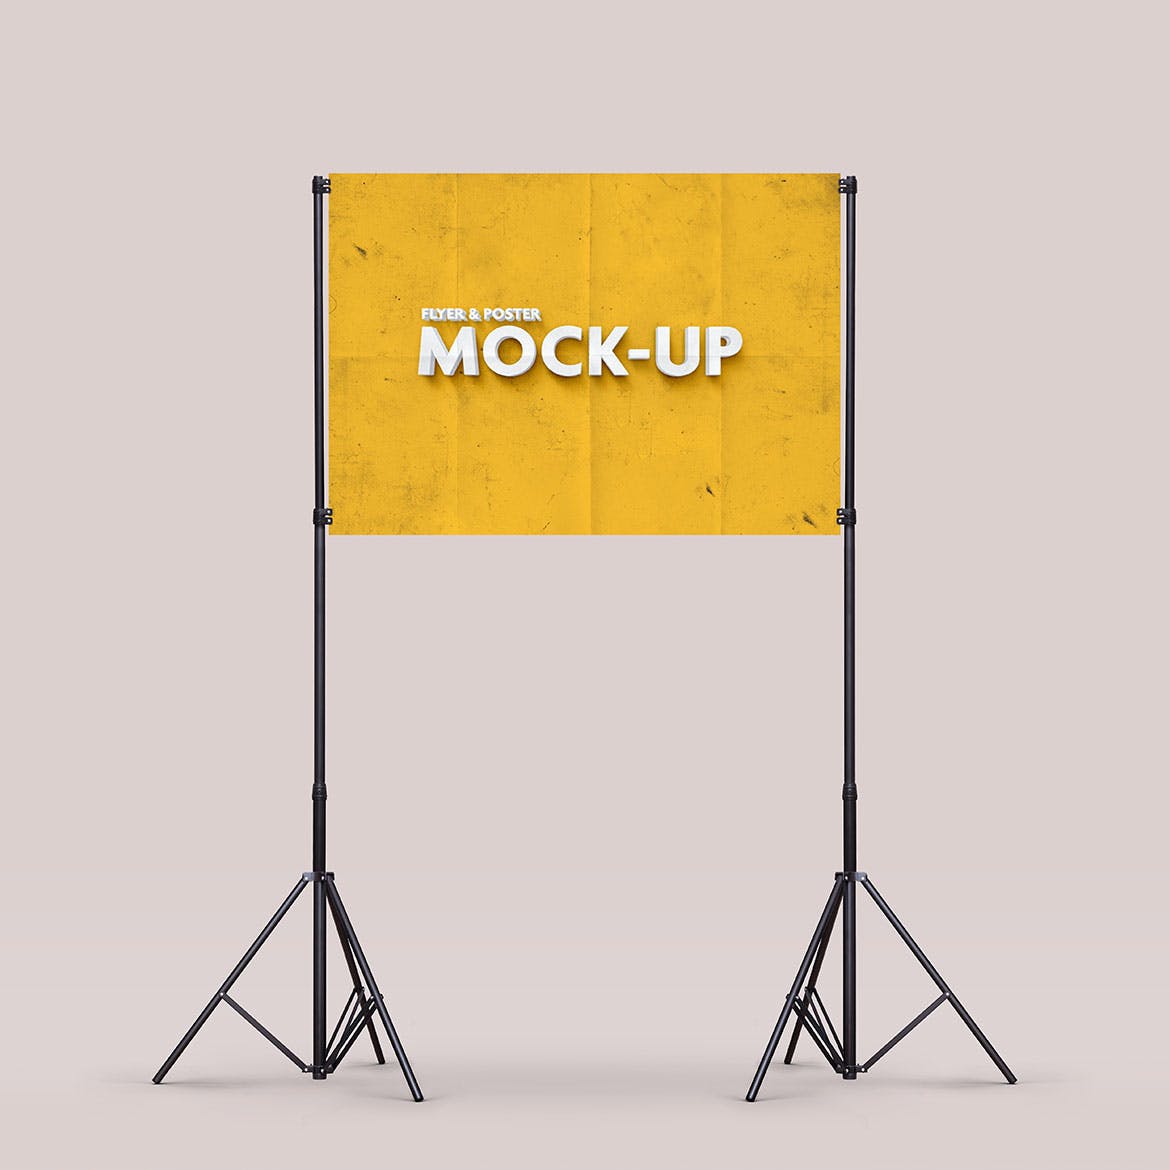 支架海报传单广告展示样机模板 Poster Mockup vol.2 / 10 Different Images设计素材模板